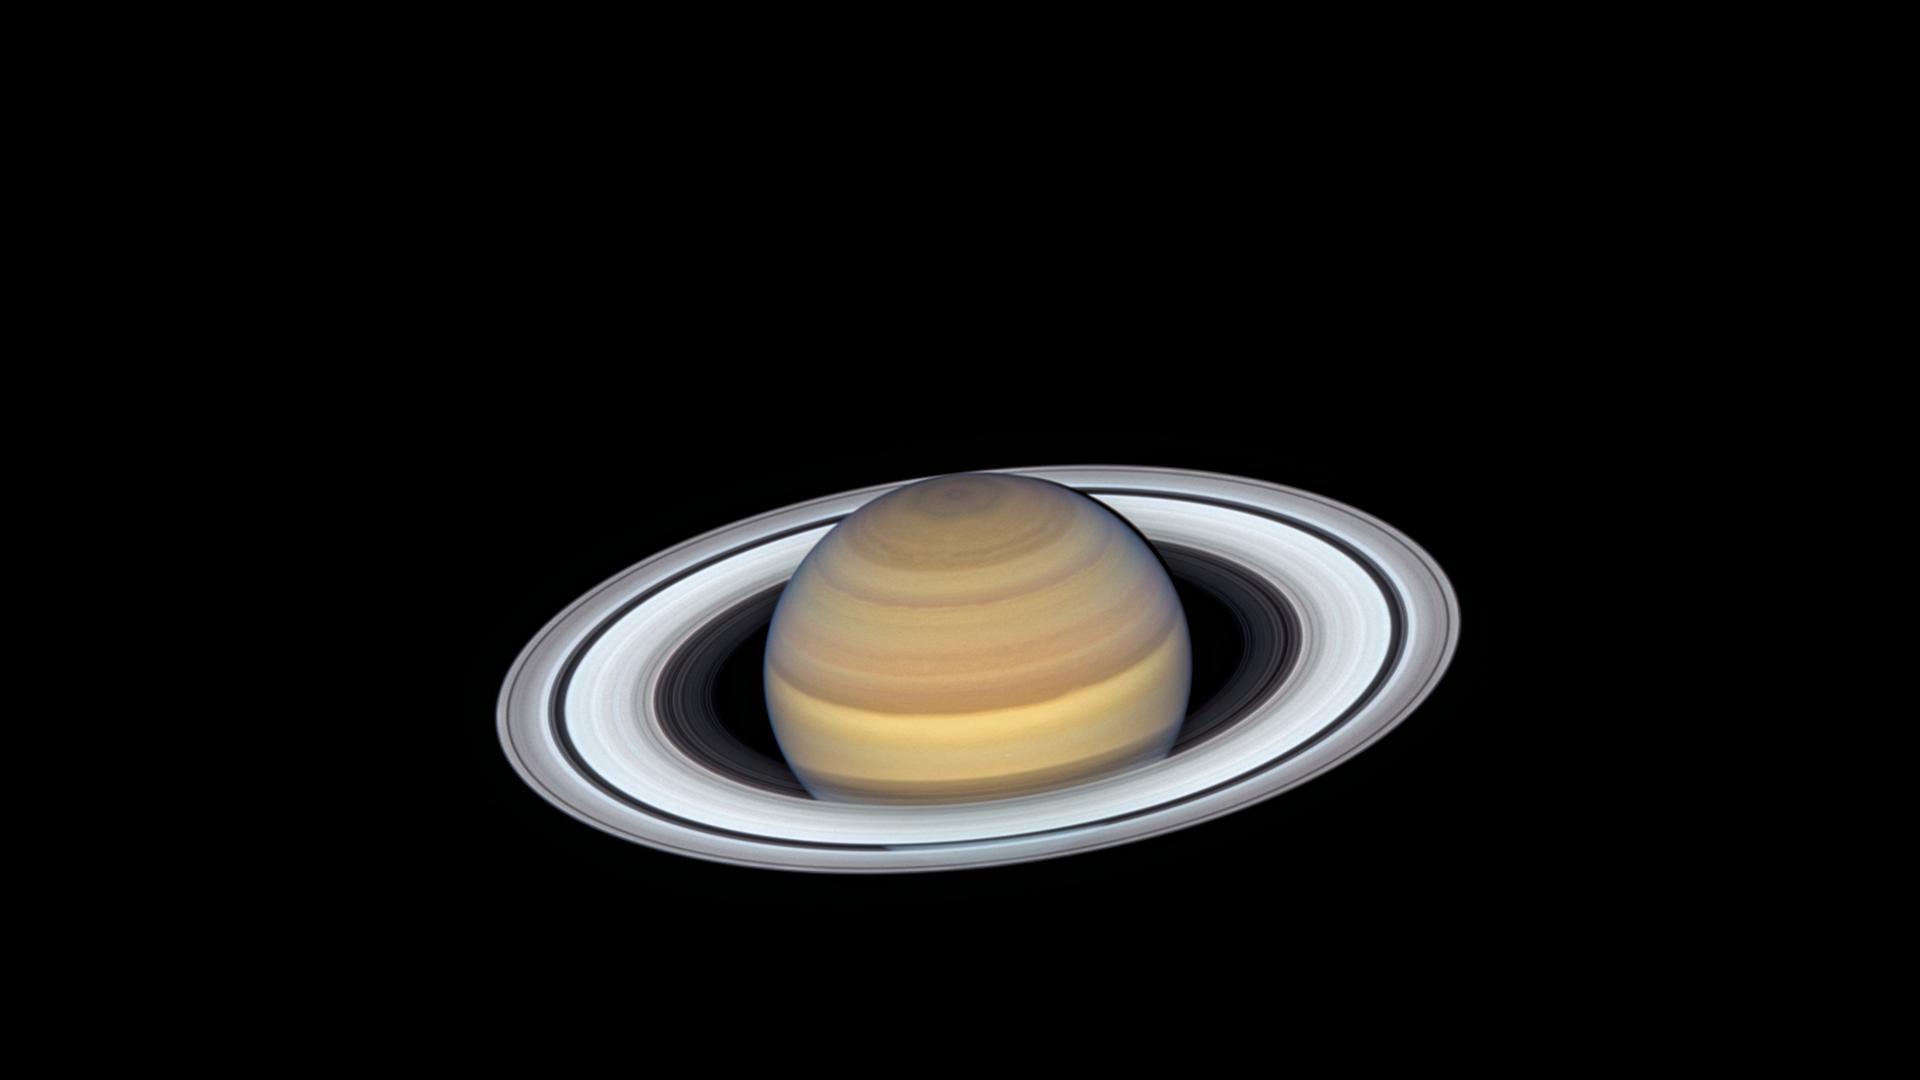 Der Ringplanet Saturn, aufgenommen vom Hubble-Weltraumteleskop